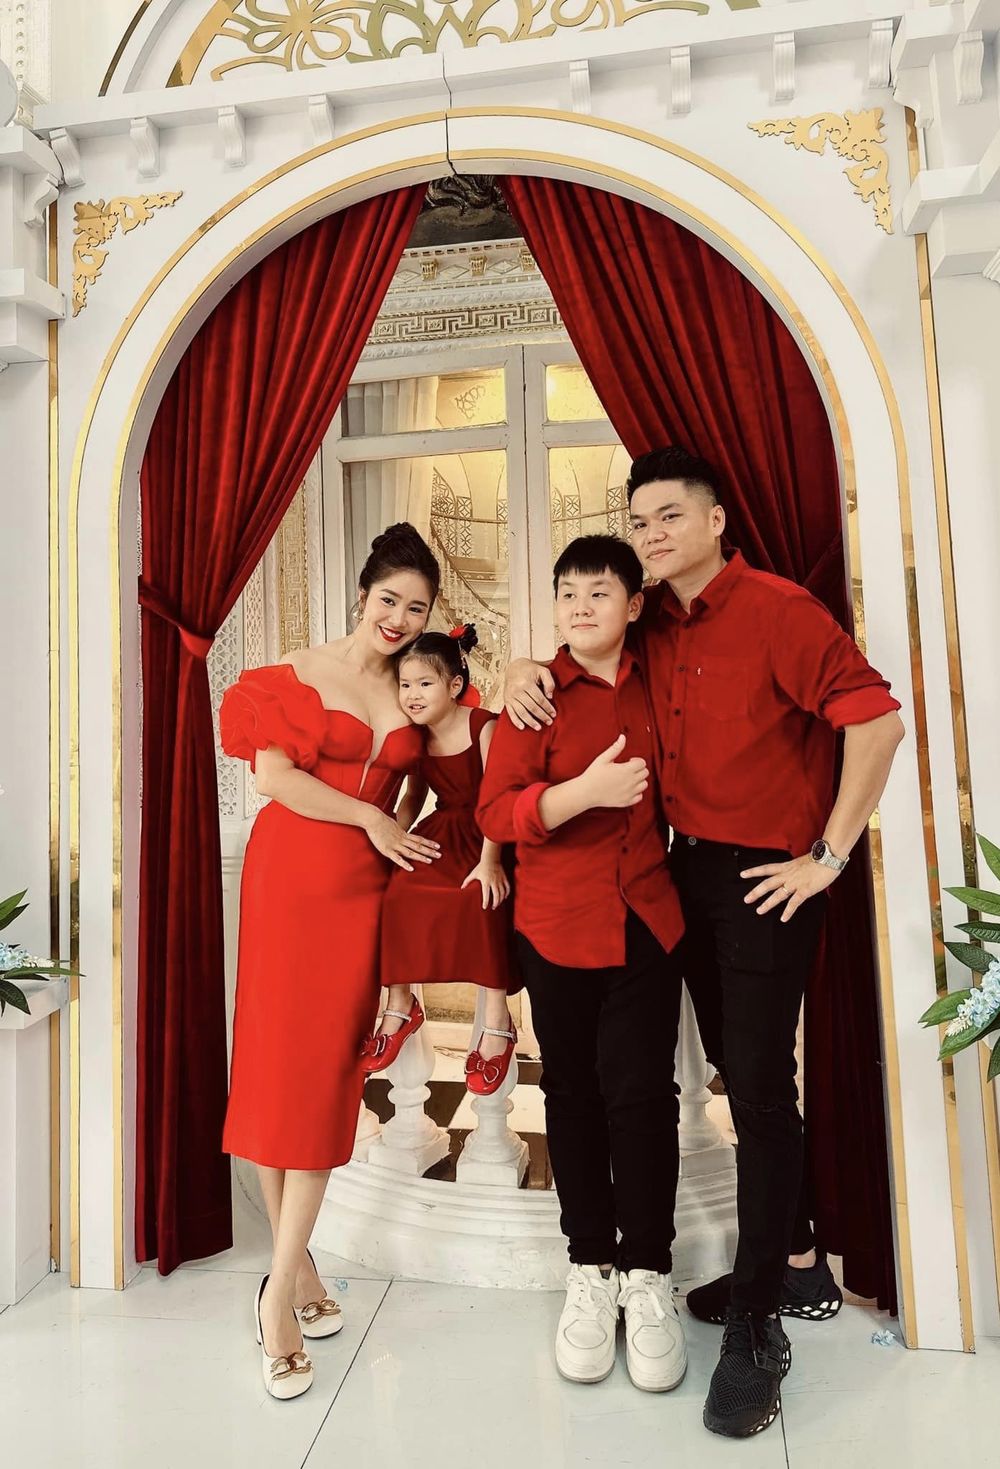  
Nữ diễn viên cùng chồng và 2 con đều lên đồ đồng điệu với tông màu đỏ rực. (Ảnh: FB Lê Phương)